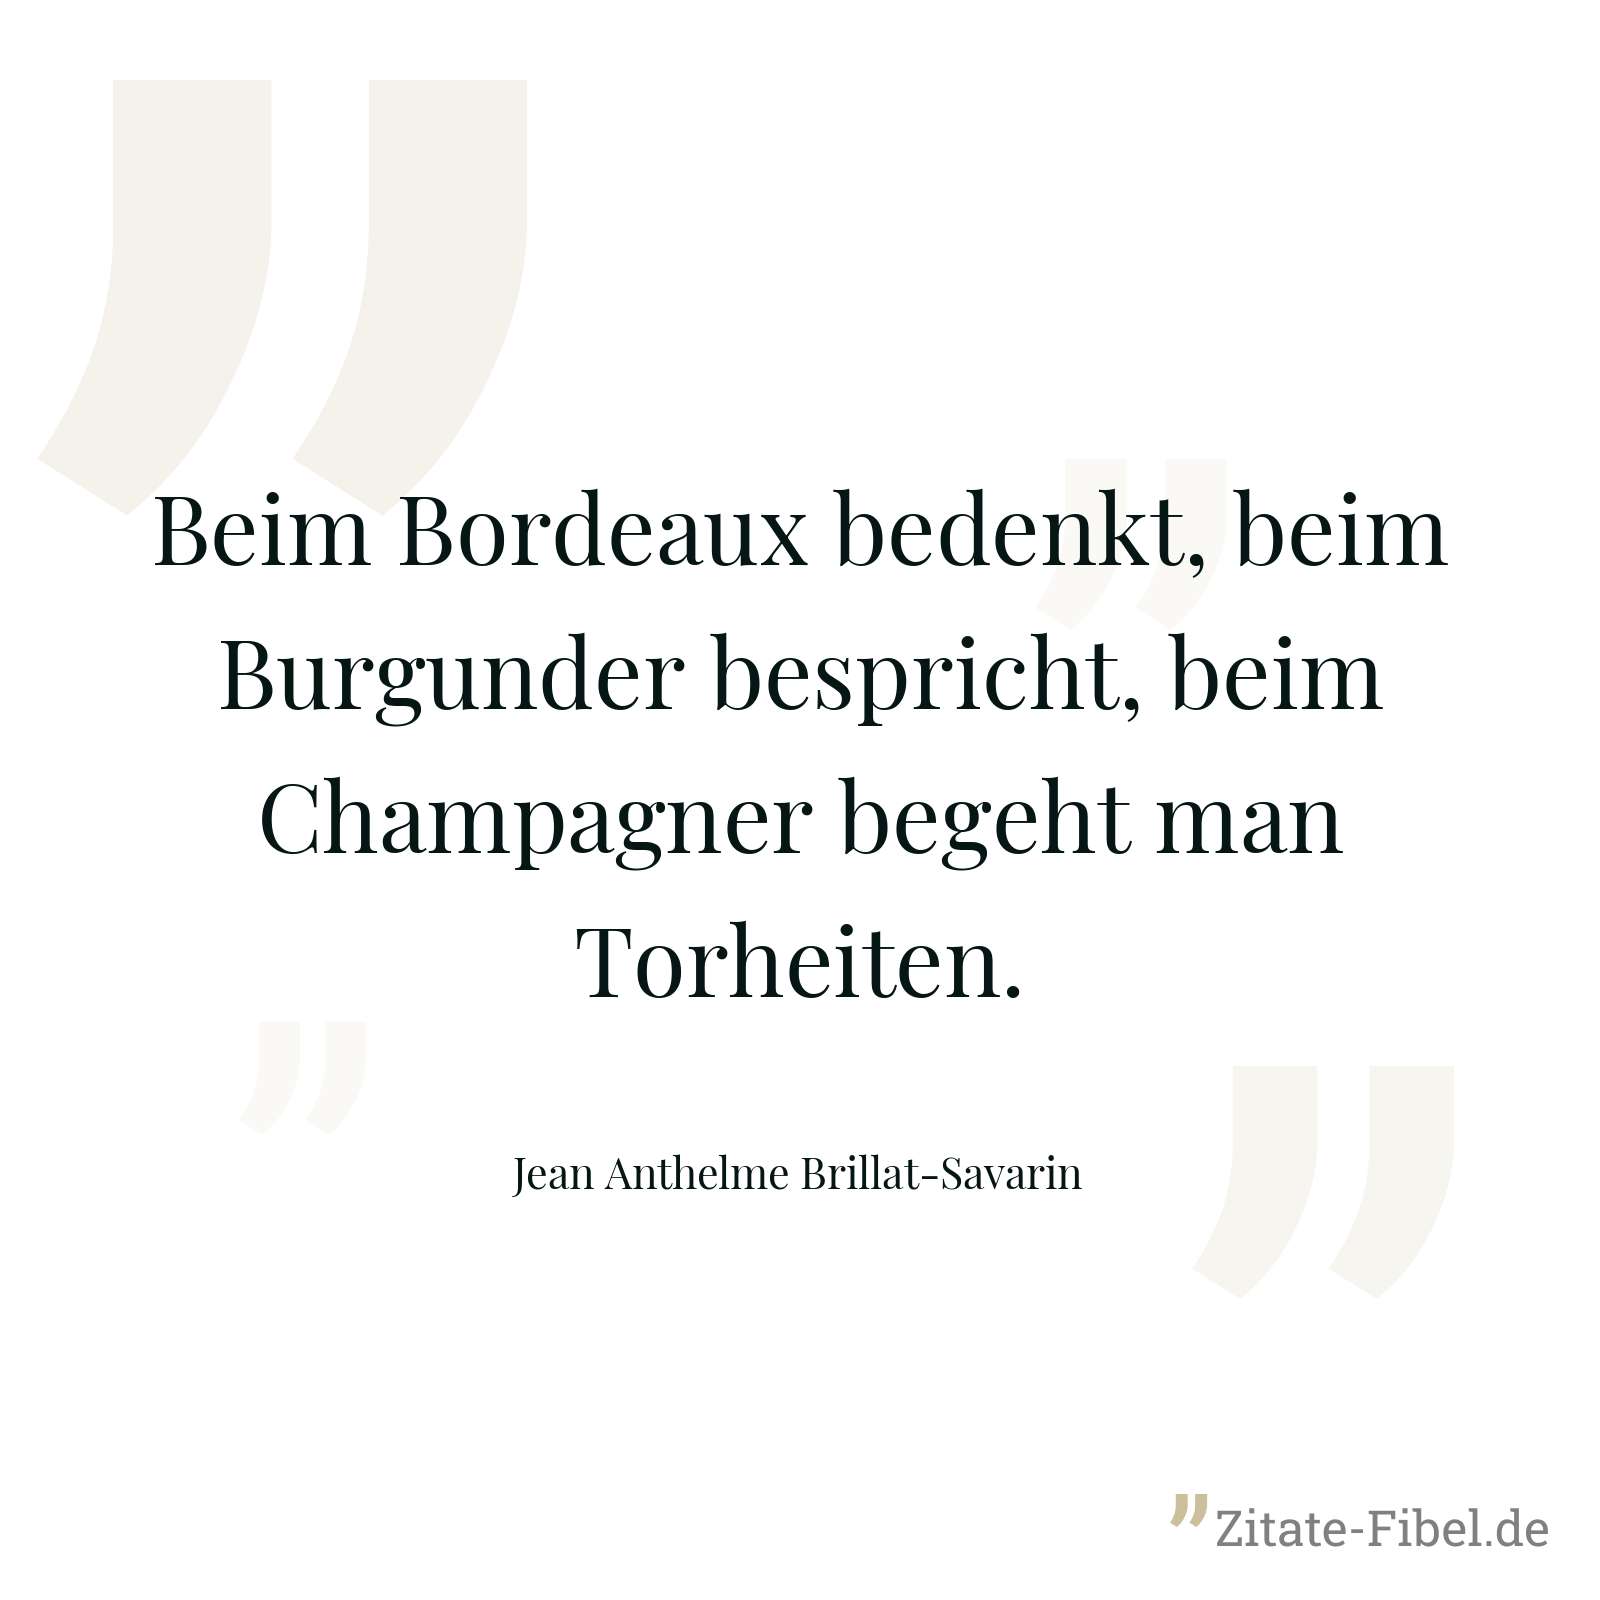 Beim Bordeaux bedenkt, beim Burgunder bespricht, beim Champagner begeht man Torheiten. - Jean Anthelme Brillat-Savarin